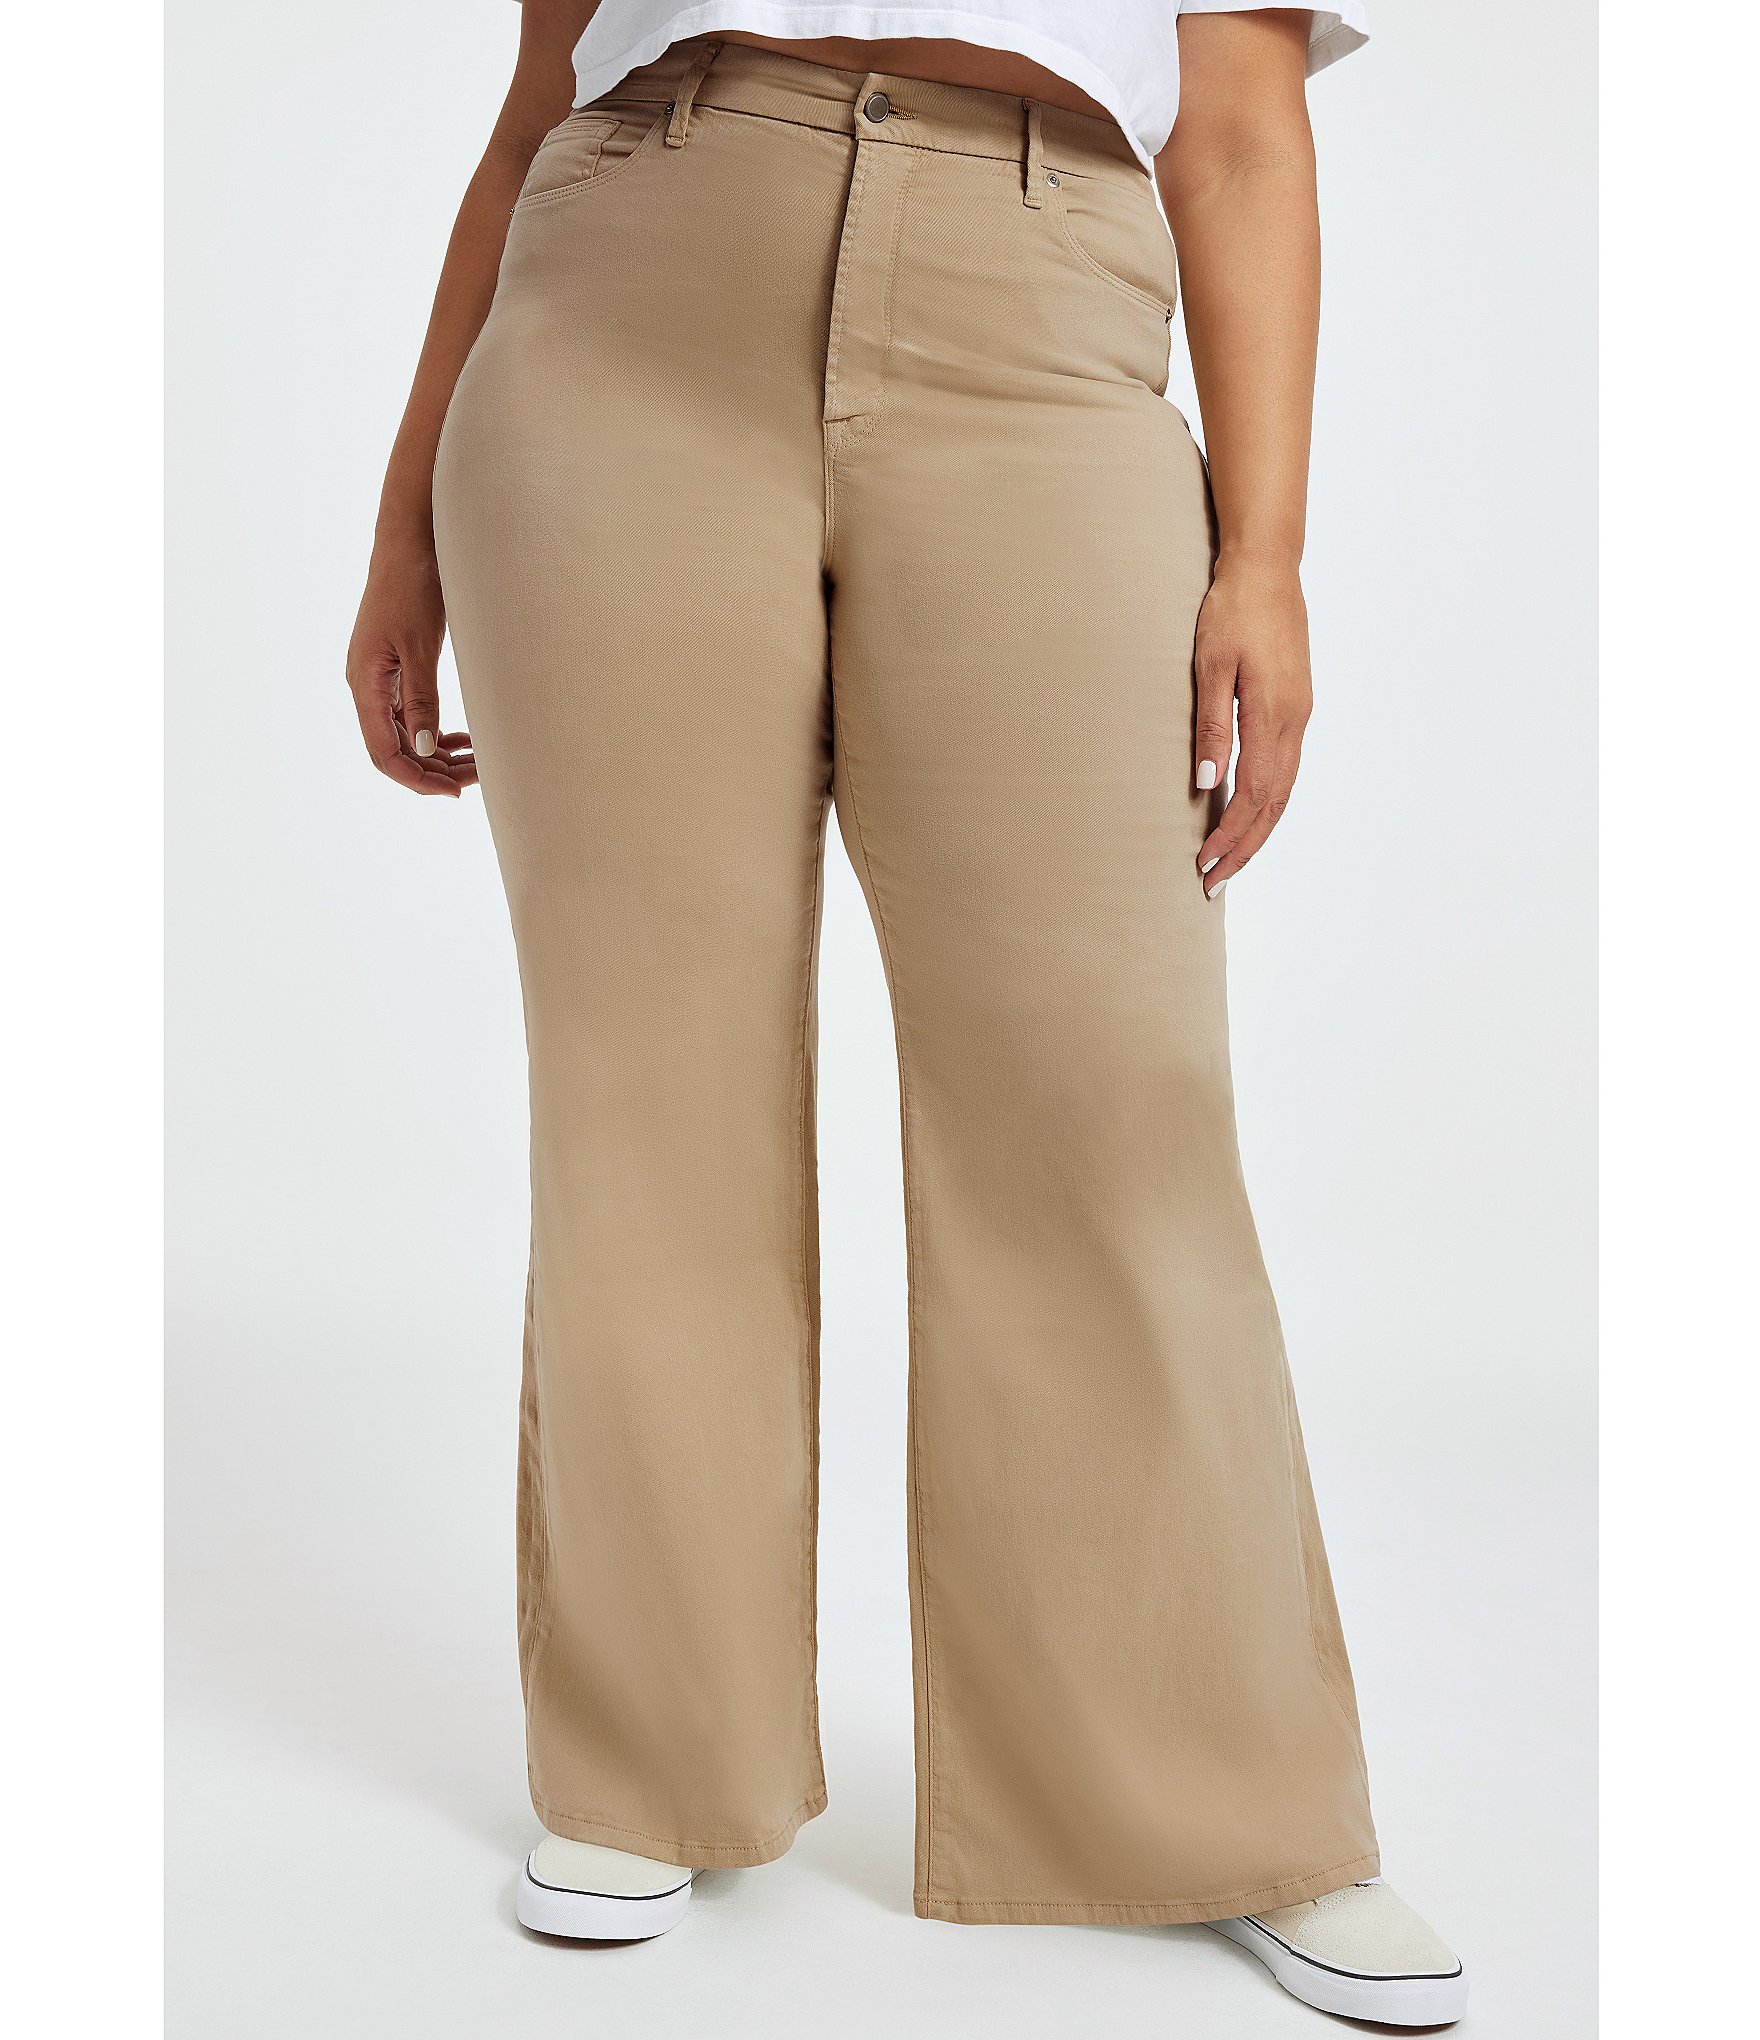 palazzo pants: Women's Plus Size Clothing | Dillard's